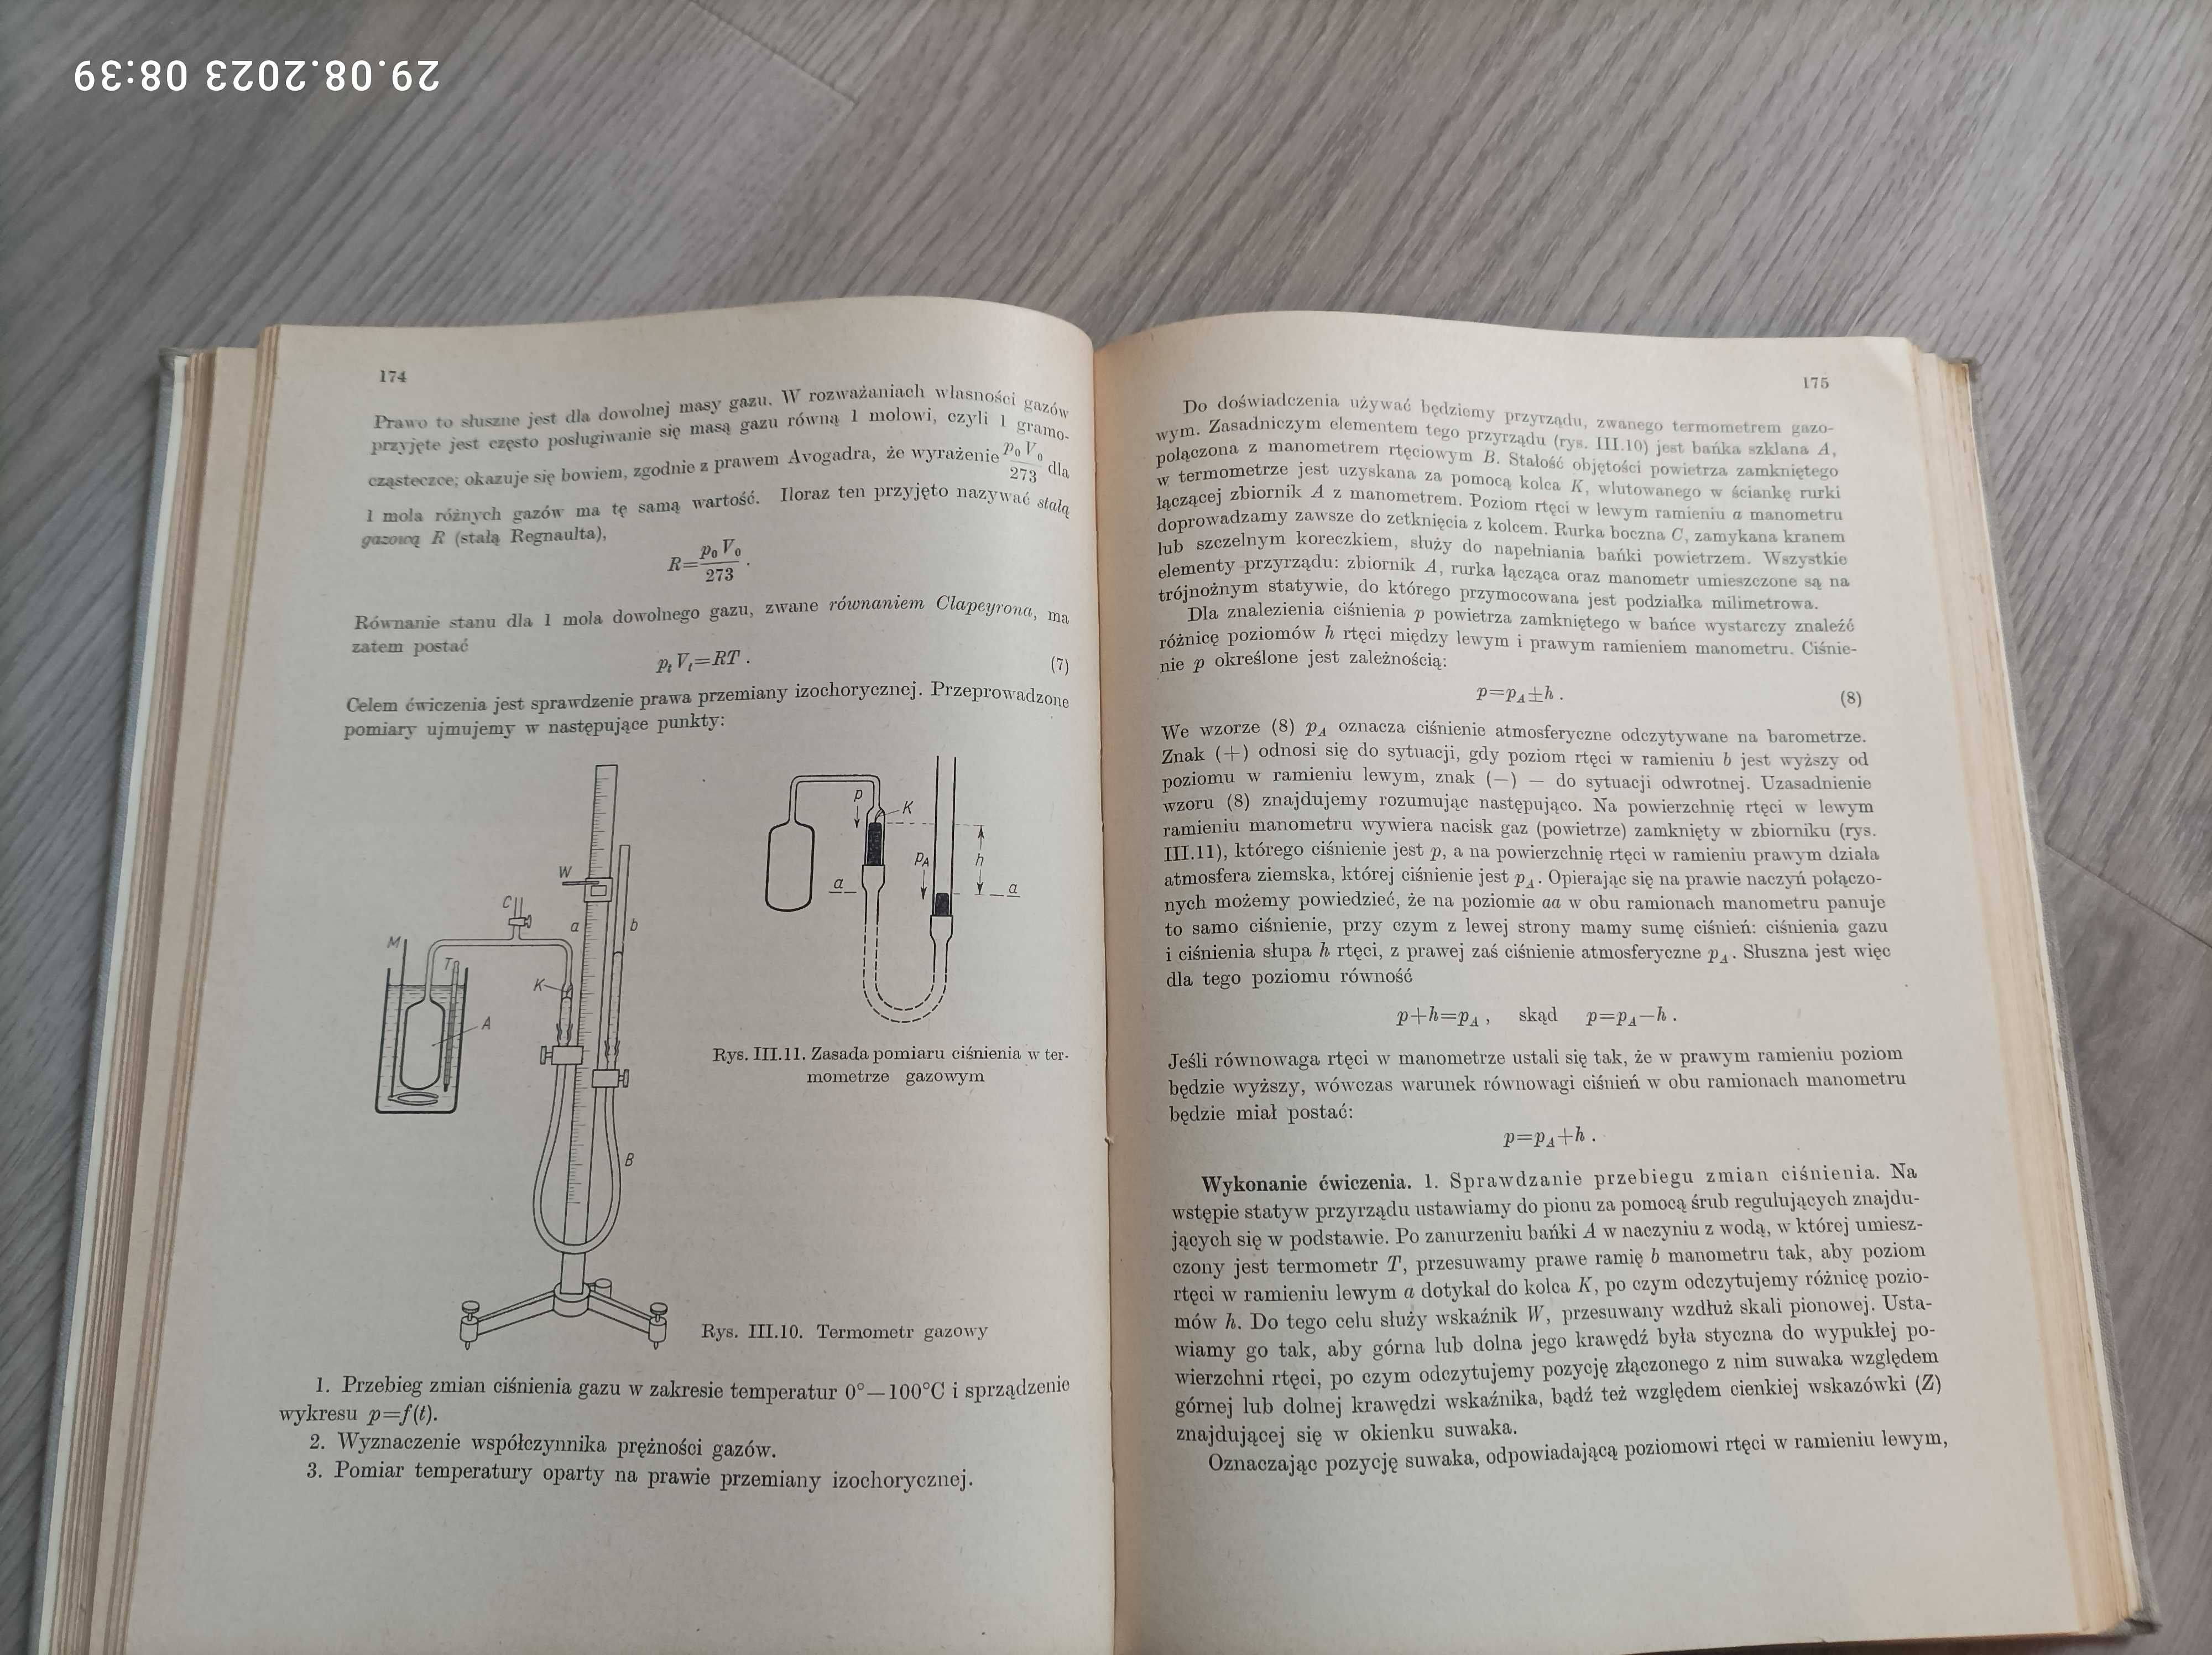 Ćwiczenia laboratoryjne z fizyki, T. Dryński